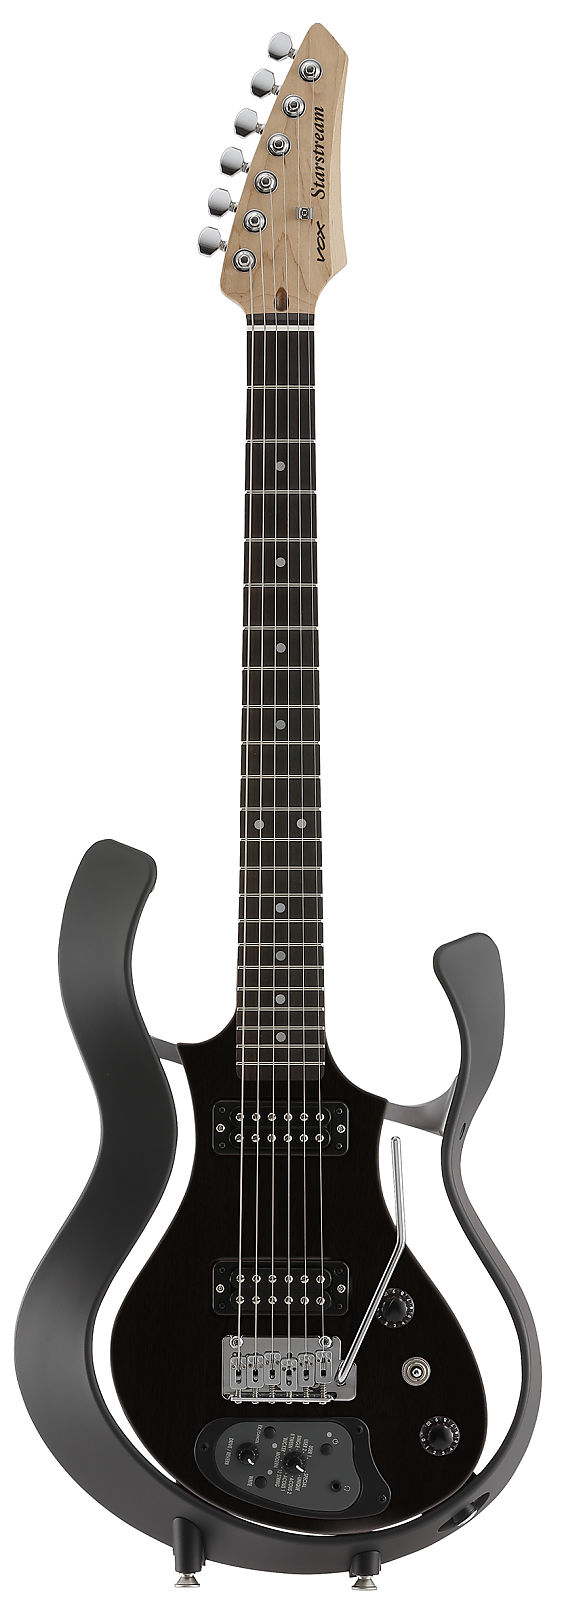 Vox VSS-1 Starstream Type 1 Modeling Electric Guitar Black | Reverb